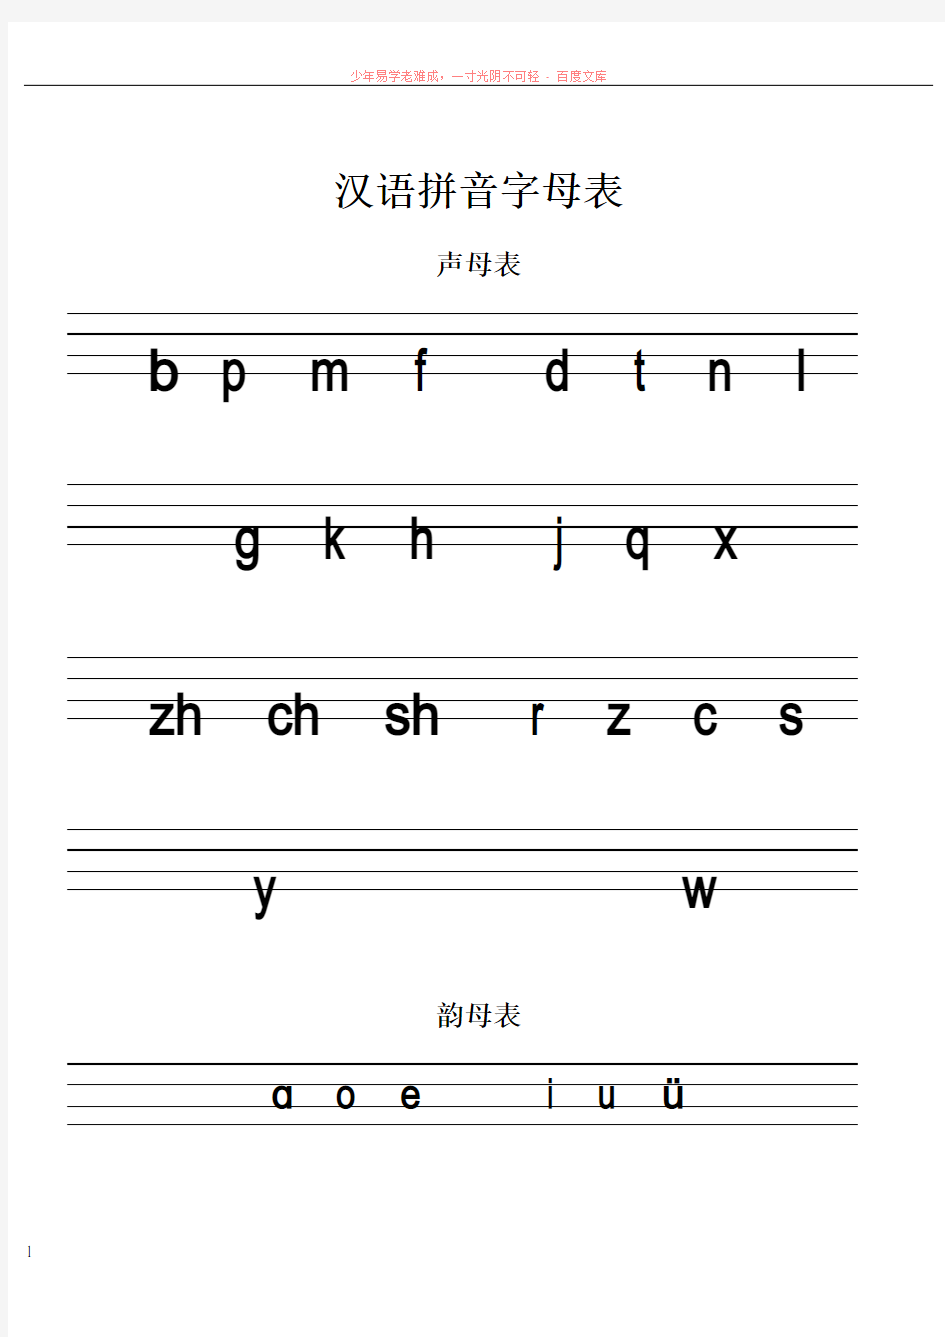 汉语拼音字母表及标准写法